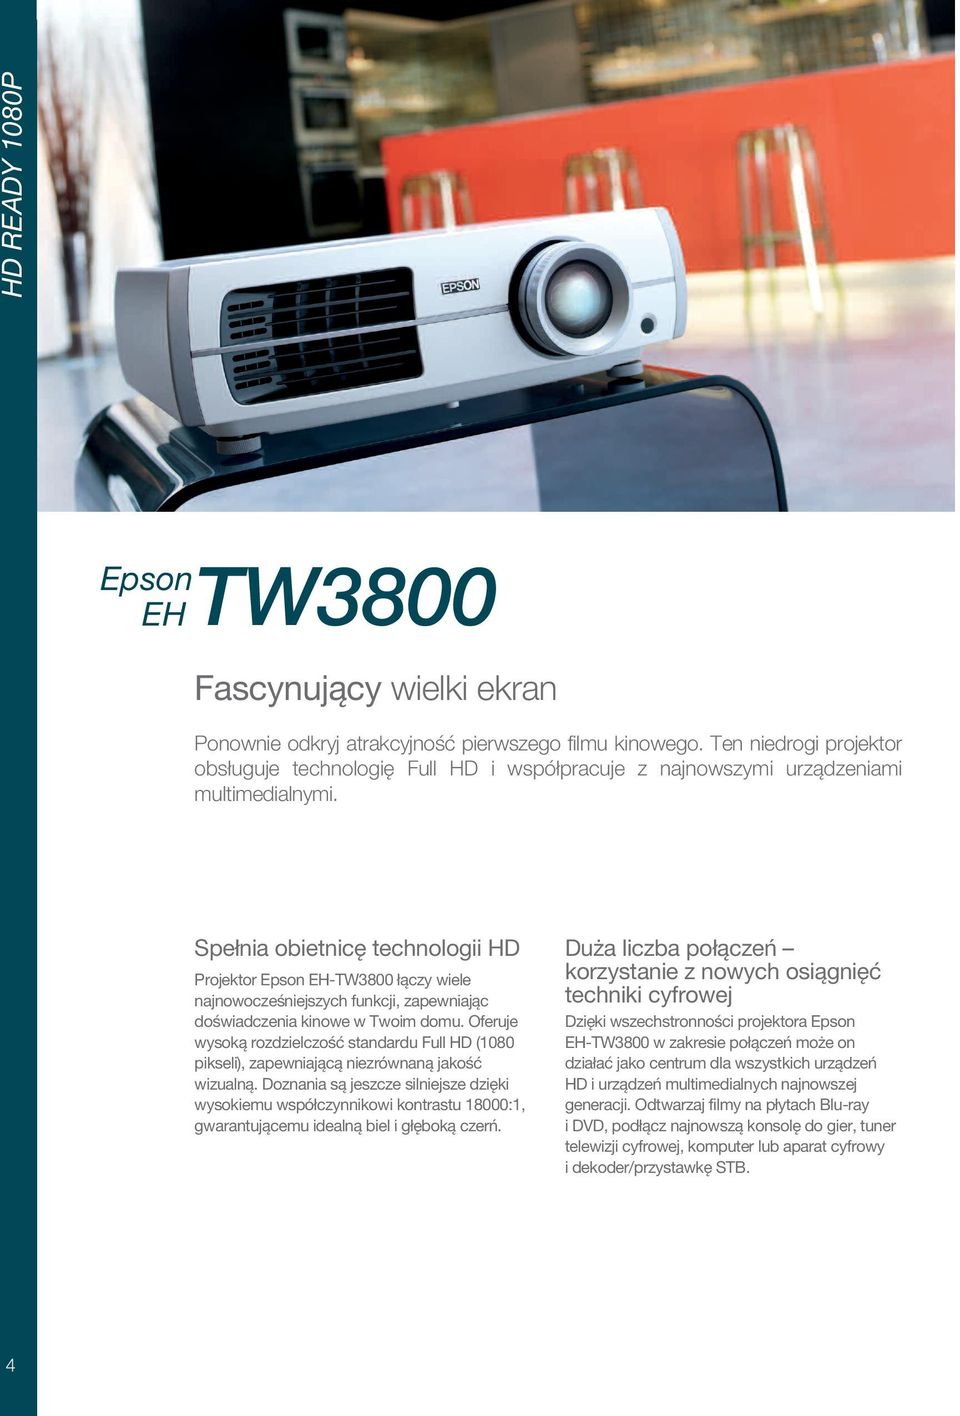 Spełnia obietnicę technologii HD Projektor Epson EH-TW3800 łączy wiele najnowocześniejszych funkcji, zapewniając doświadczenia kinowe w Twoim domu.